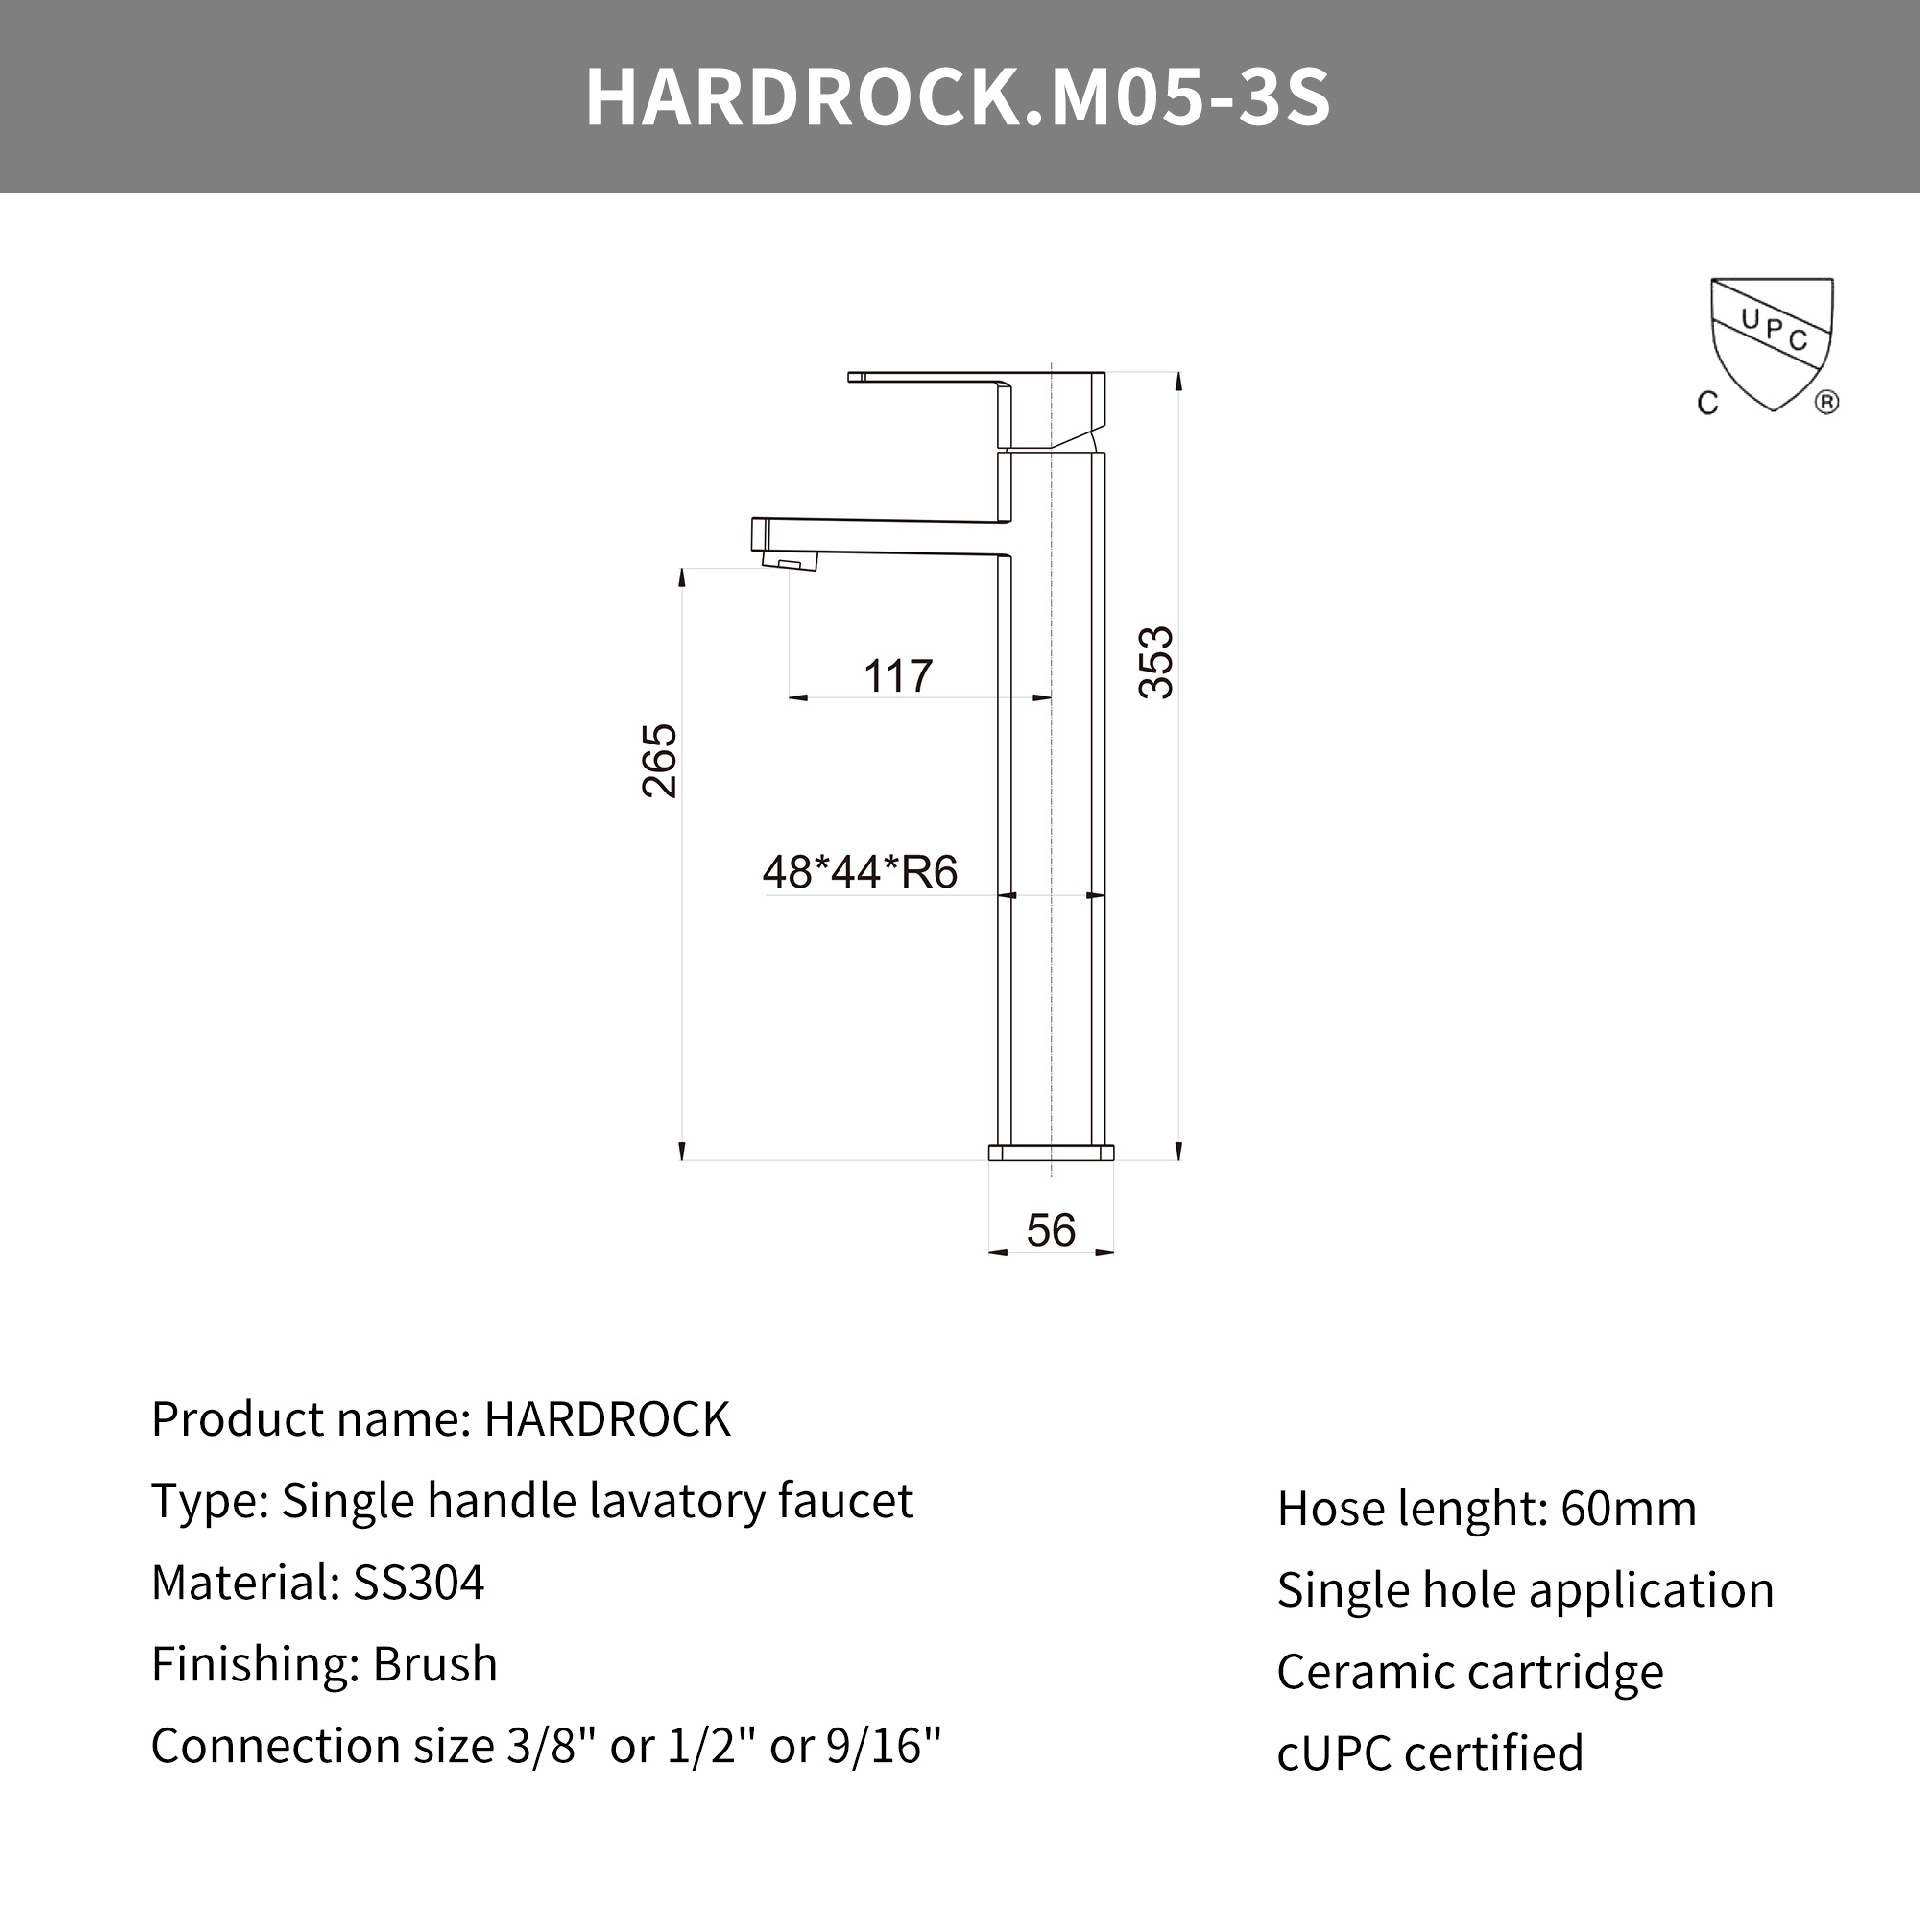 Hardrock.M05-3S